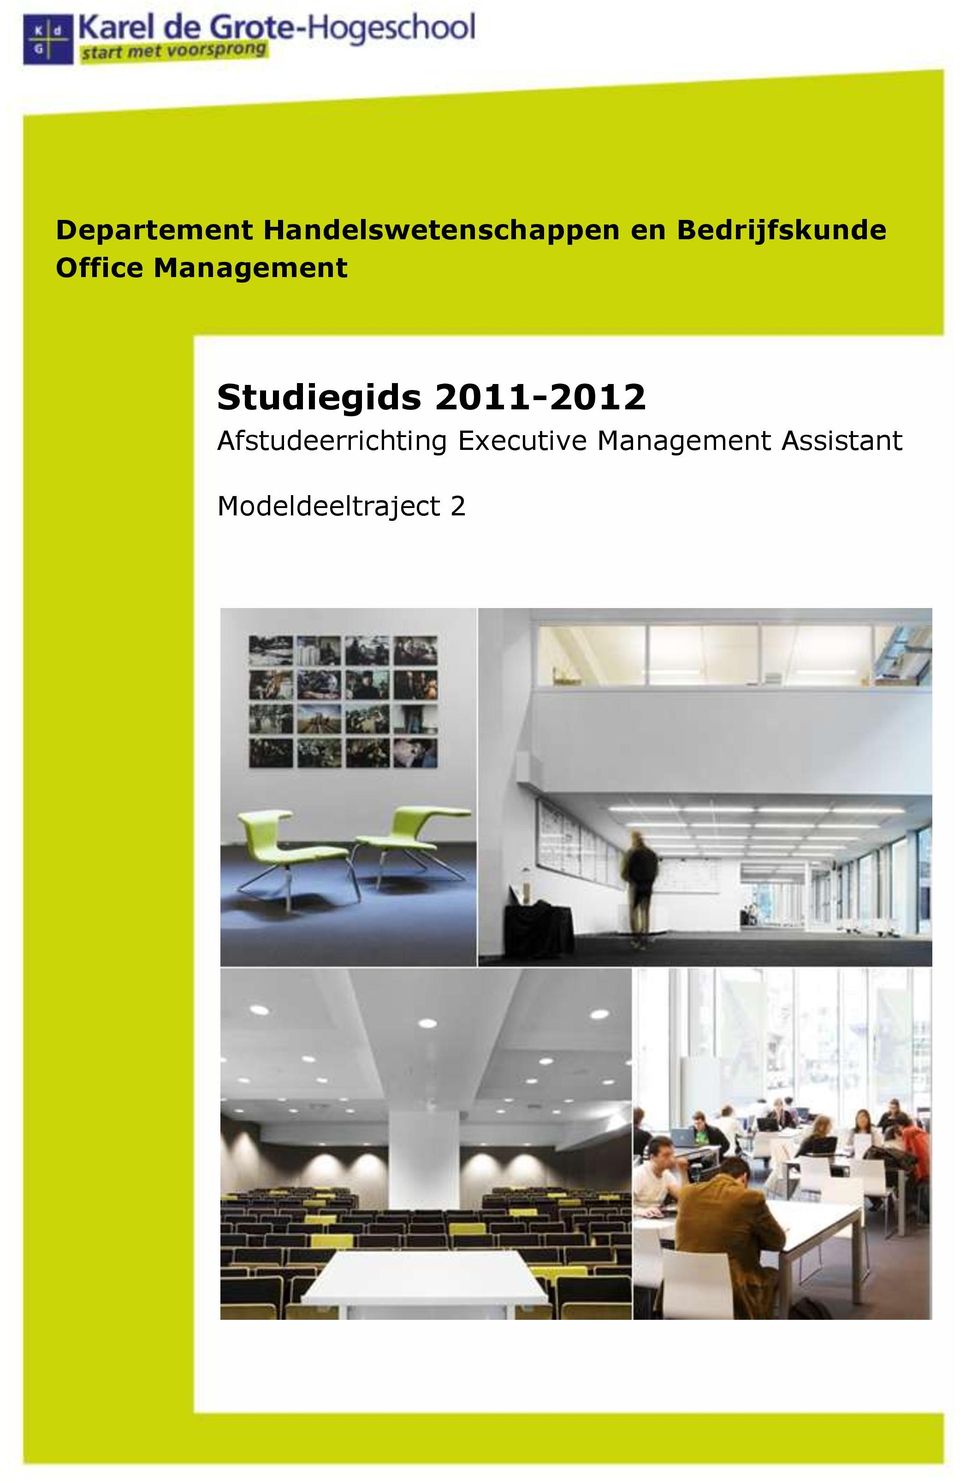 Studiegids 2011-2012 Afstudeerrichting